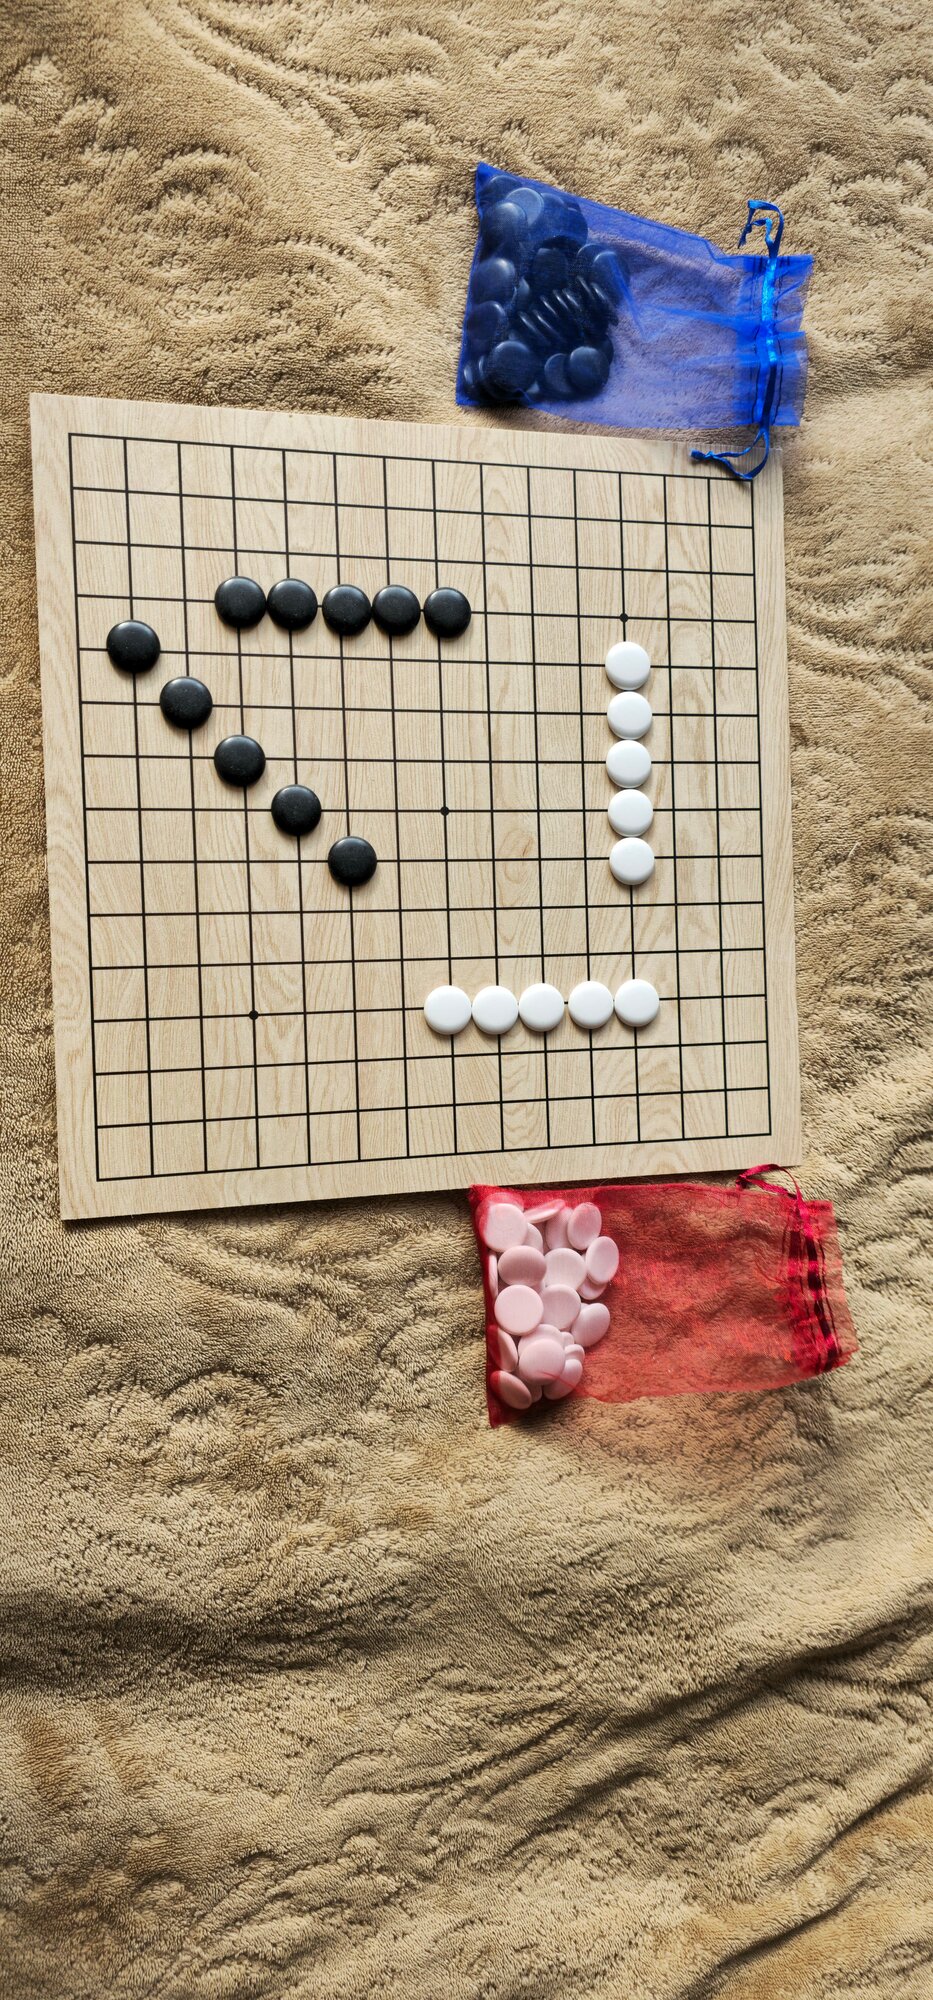 Настольная игра Рэндзю ( японские крестики-нолики), набор № 1, доска 15* 15/ 9* 9 ( для Го) и камни 120 шт.